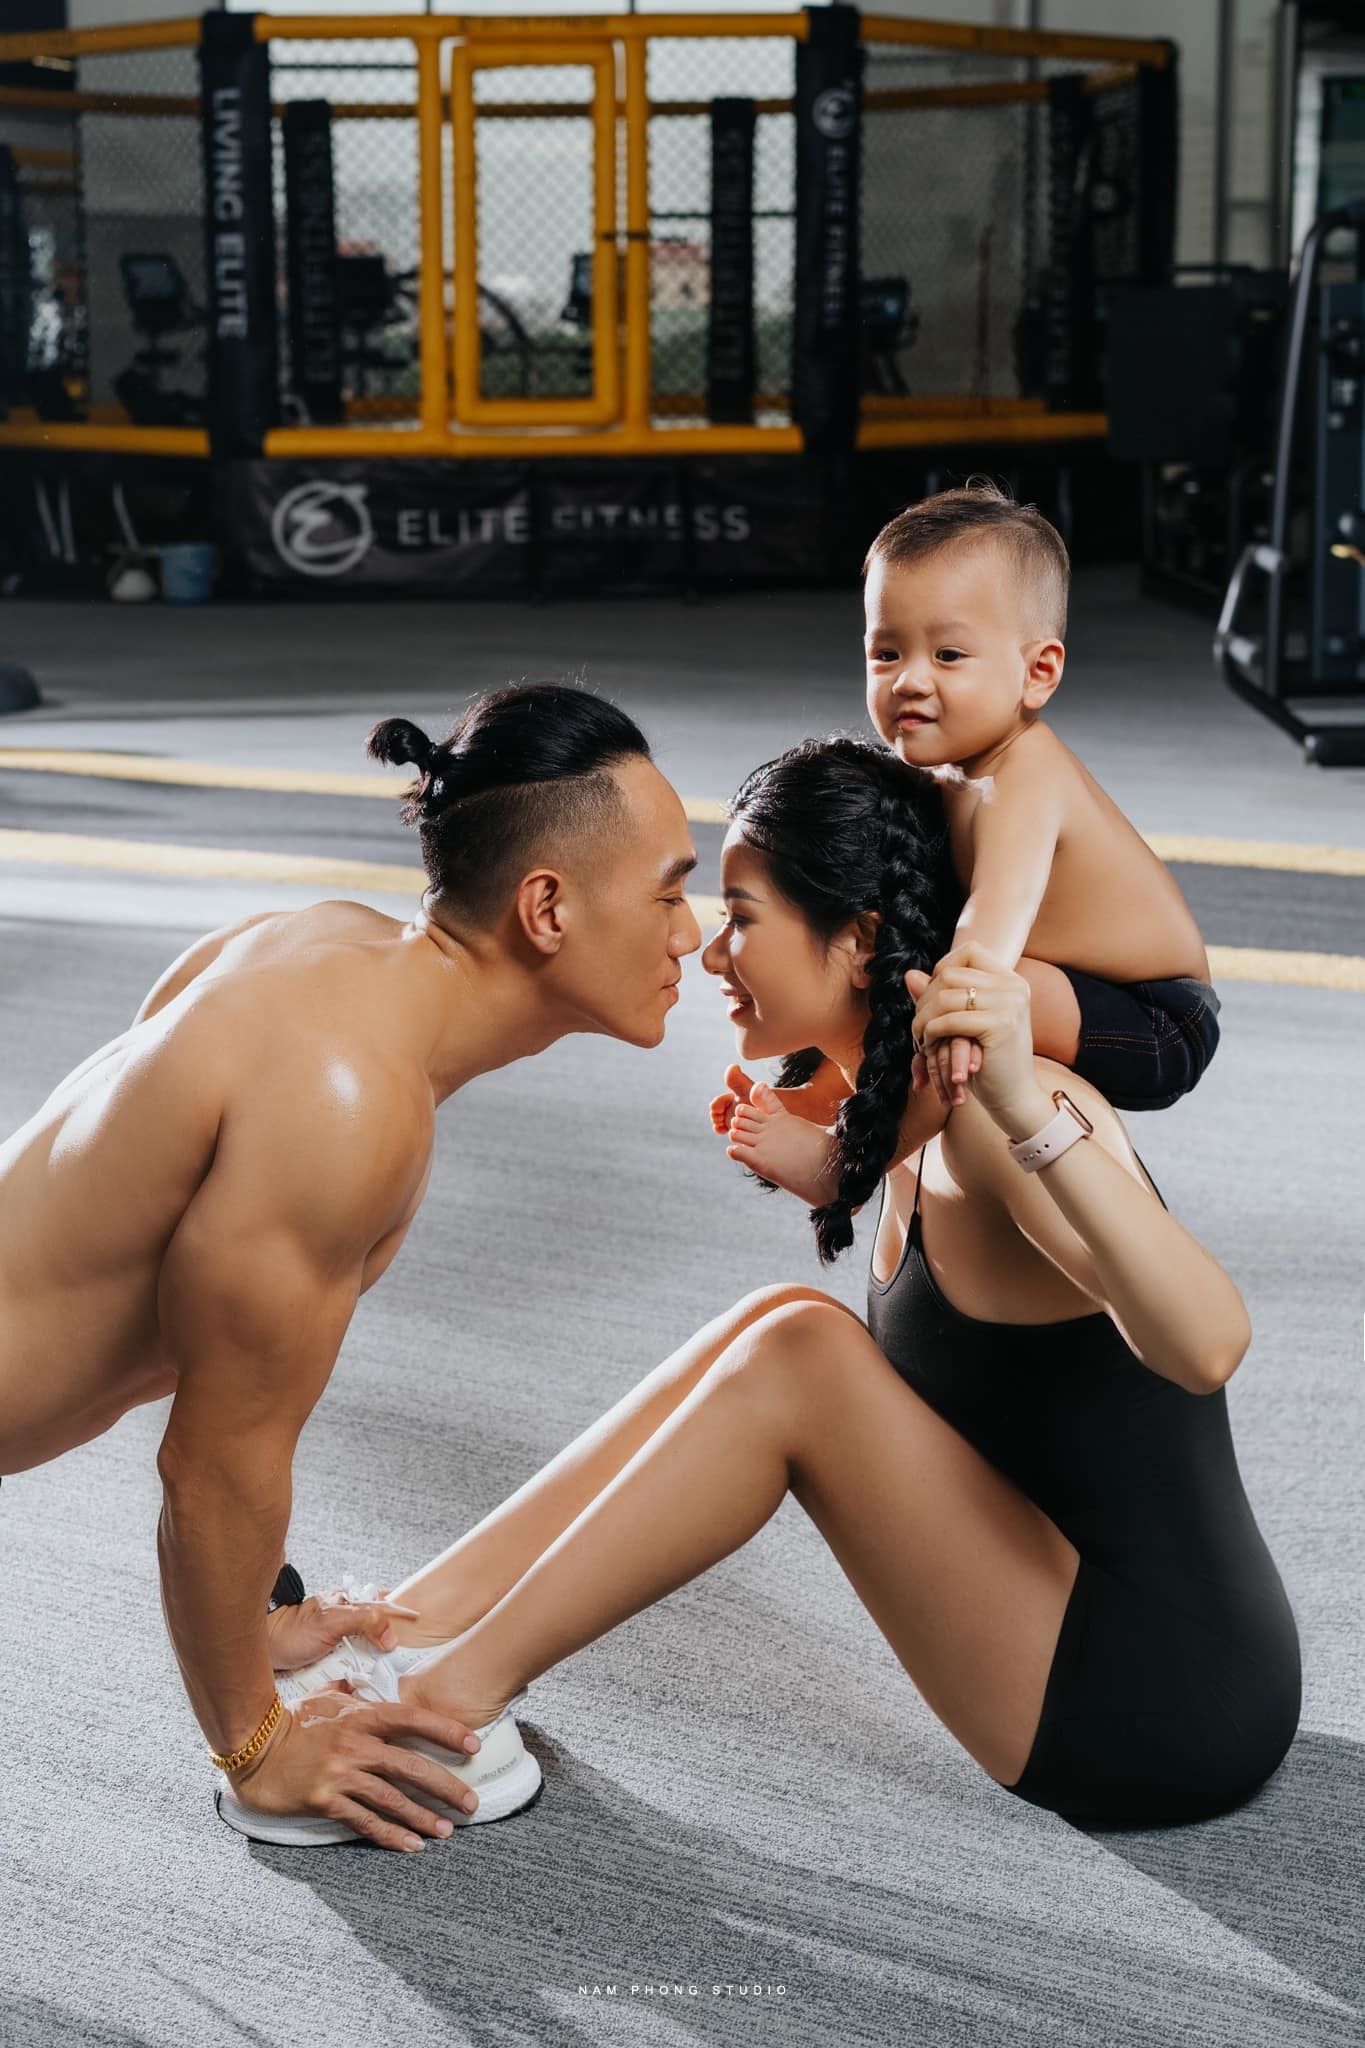 Cặp đôi Nghệ An nên duyên từ phòng Gym, khoe thành tựu 8 năm khiến dân tình ngưỡng mộ